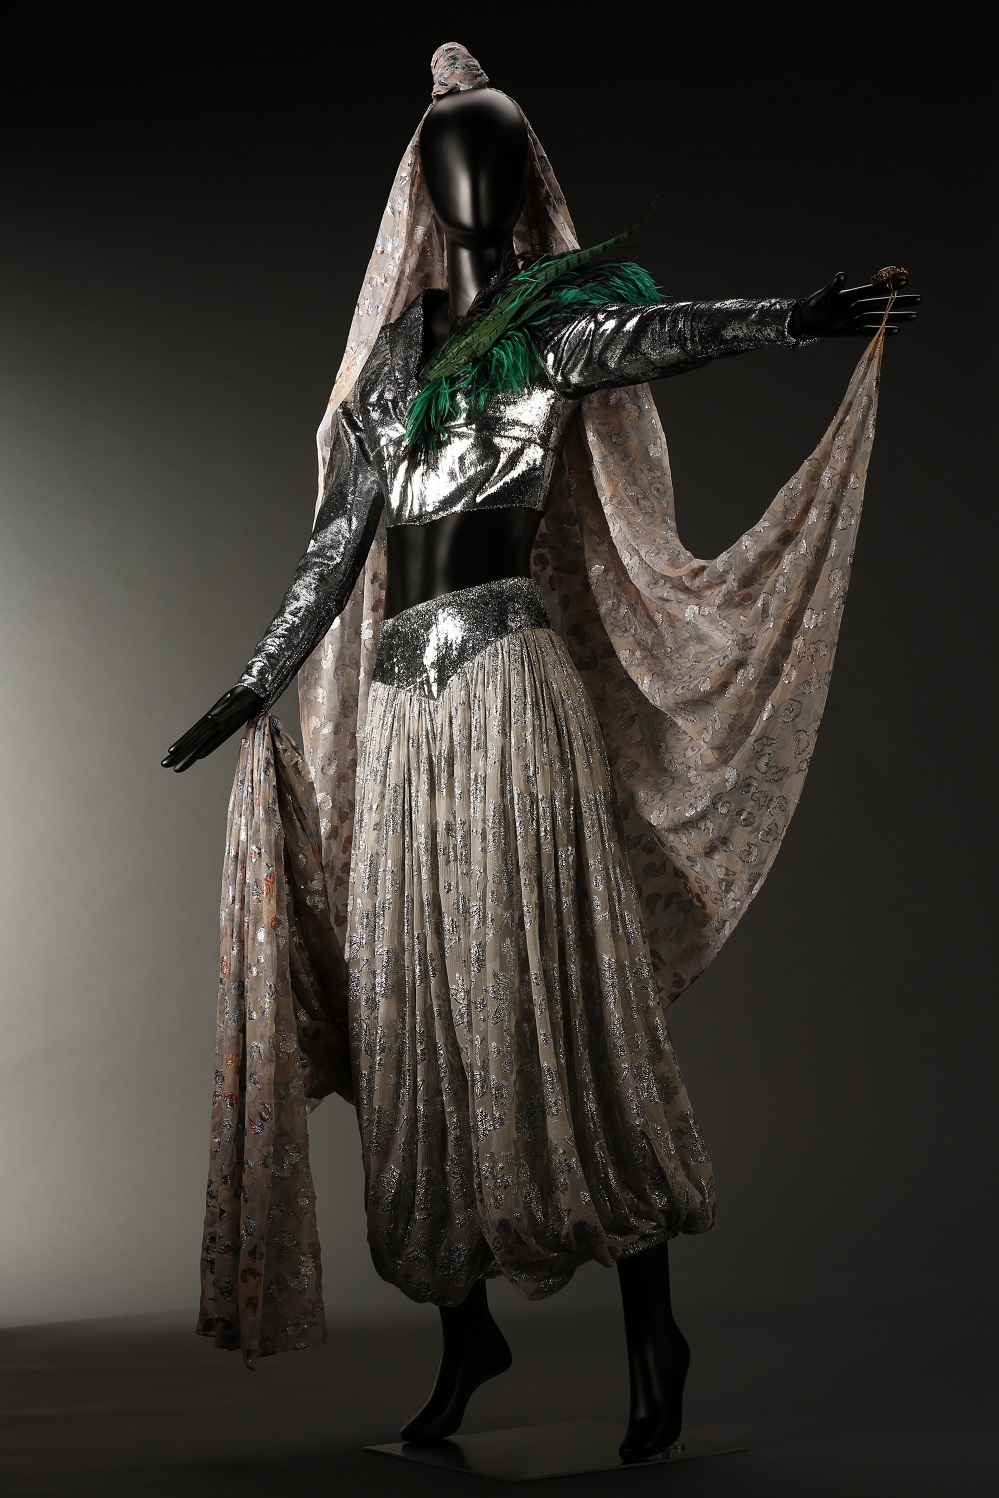 文化博物馆的梅艳芳展将于周日对外开放，展出藏品包括舞台服装。文化博物馆网站图片